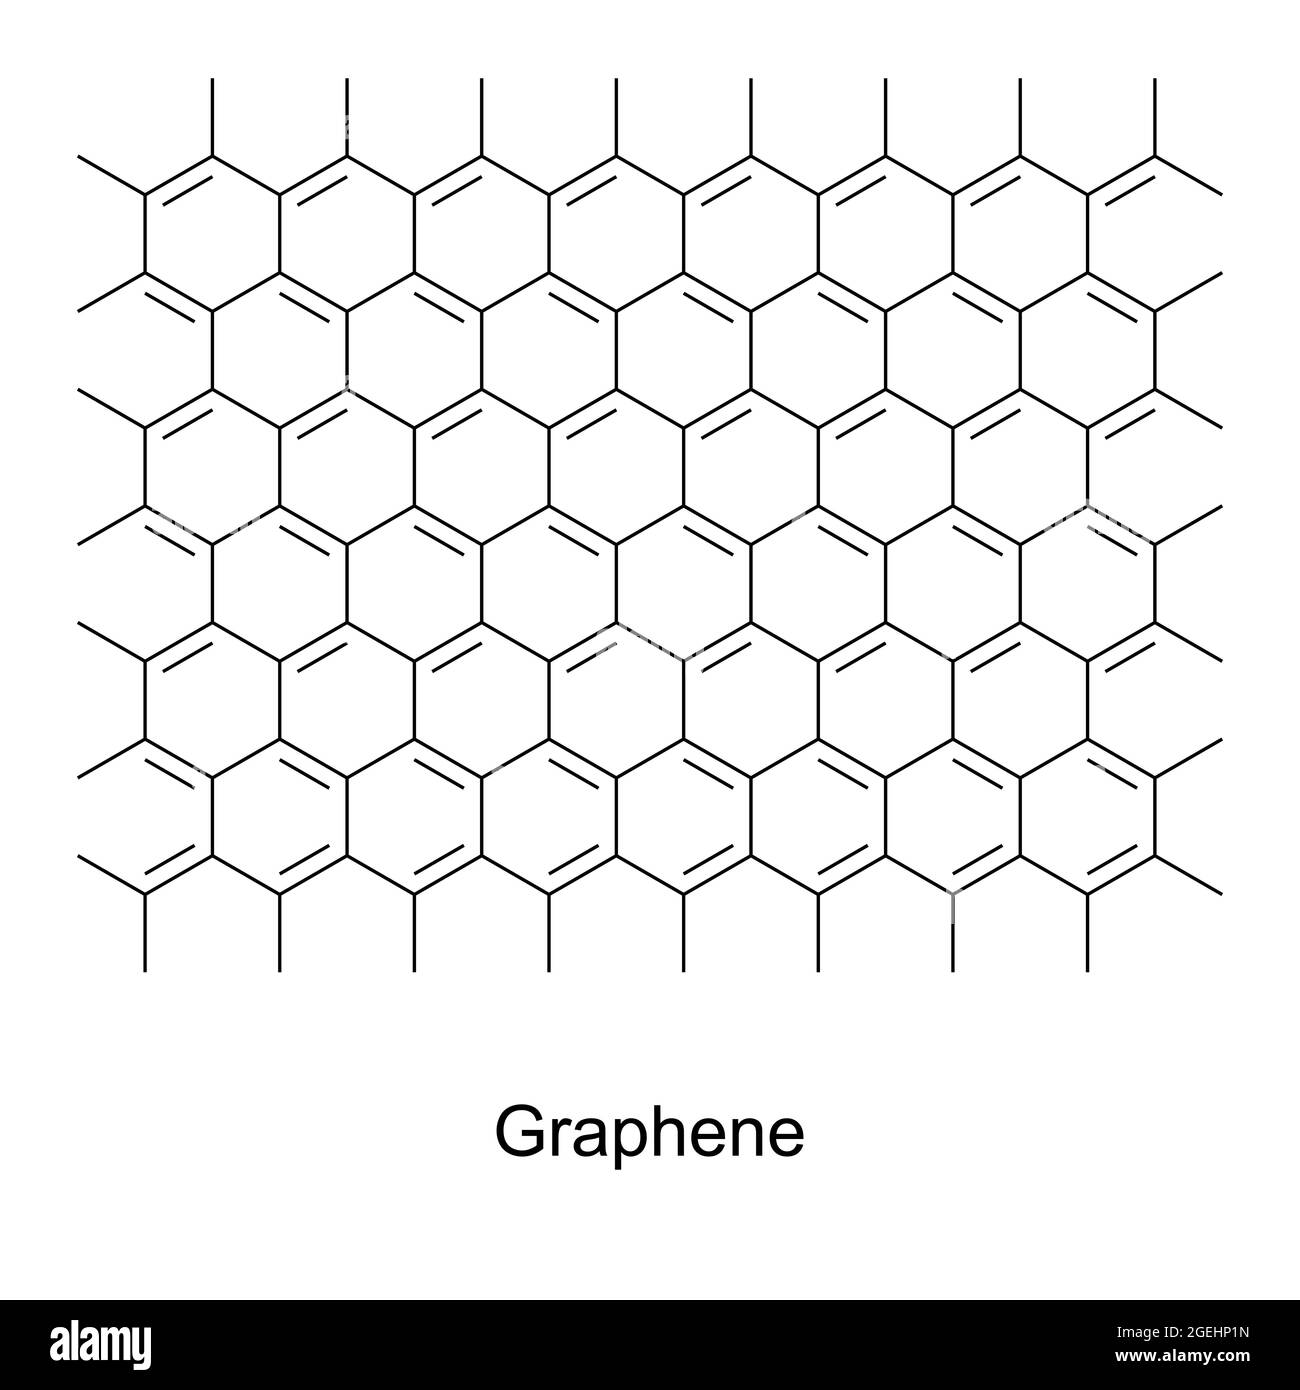 Graphène, formule chimique et structure. Une allocorde de carbone, constituée d'une seule couche d'atomes de carbone, disposée en treillis hexagonal. Banque D'Images